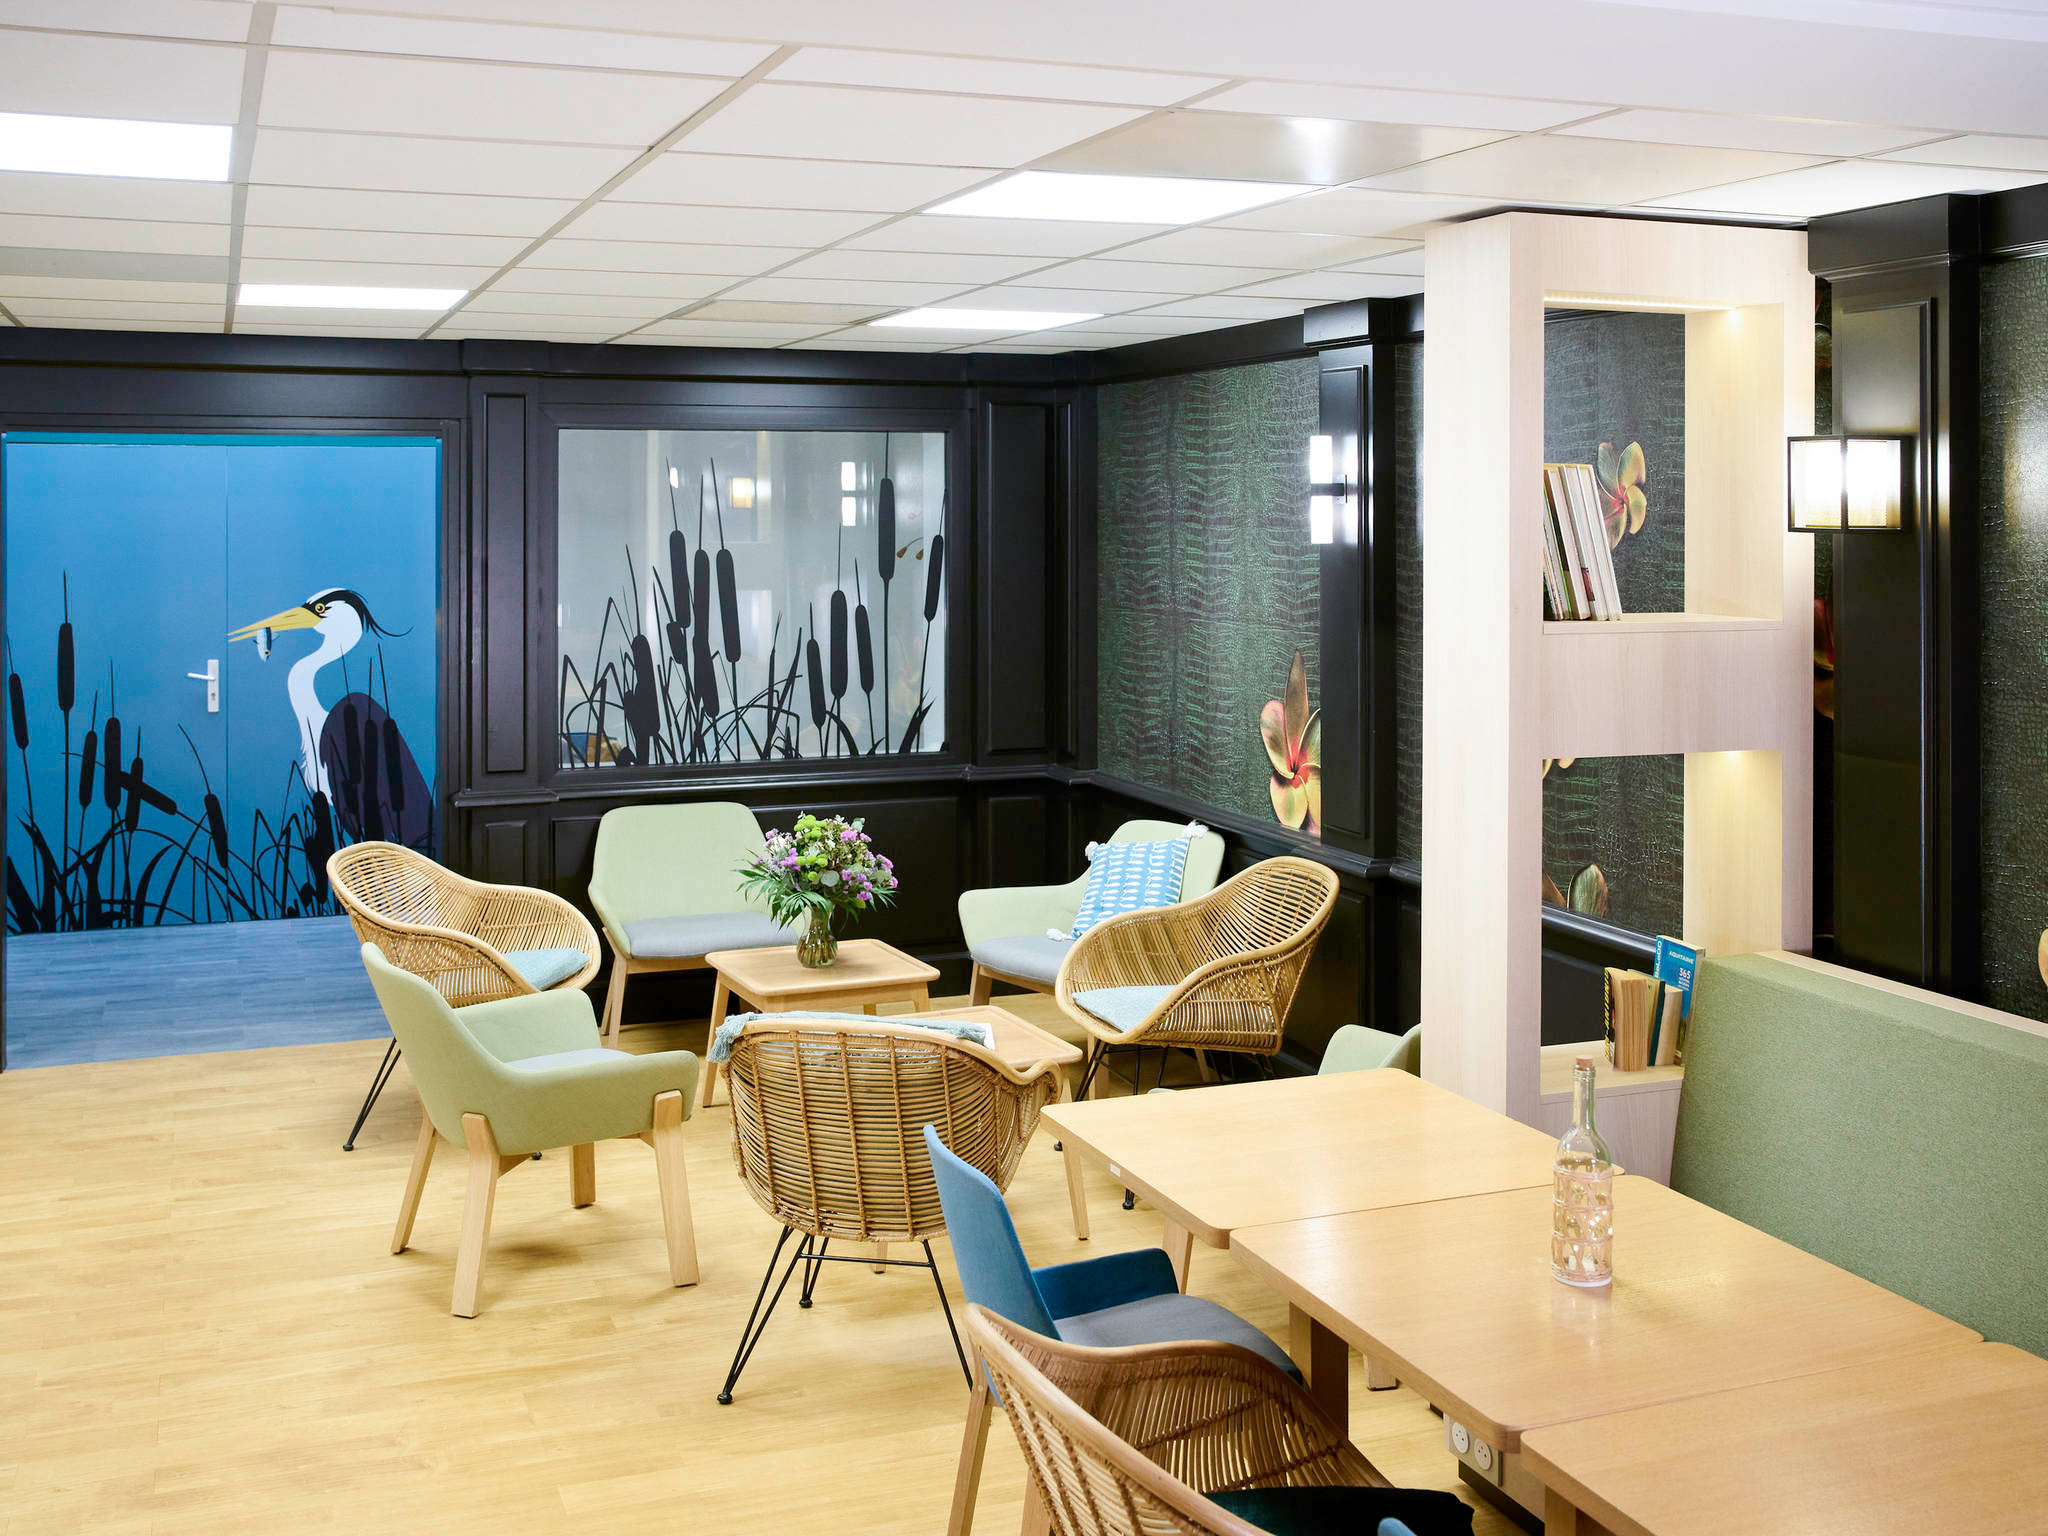 decoration-hotel-ibis-begles-salle-espaces-interieurs-mascaret-beige-mobilier-design-bordeaux